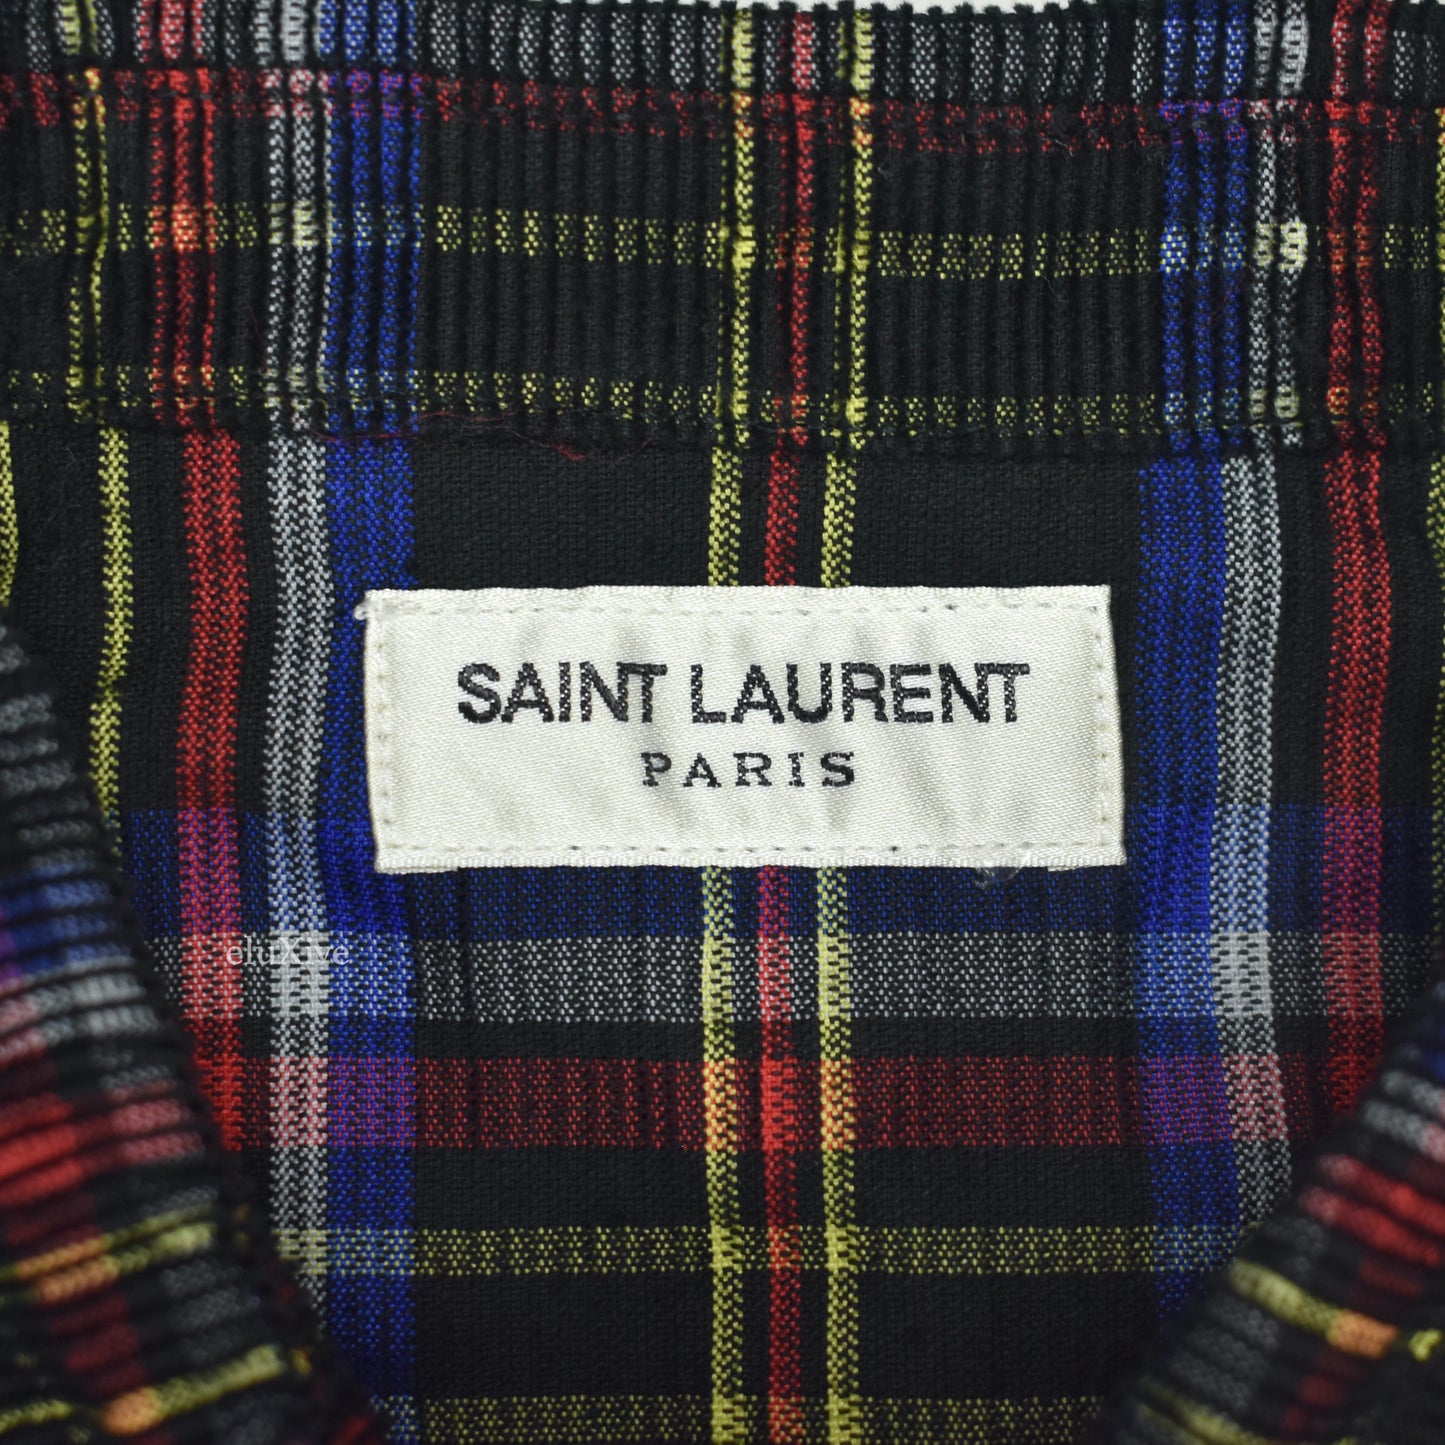 Saint Laurent - Plaid Corduroy Snap Button Western Shirt